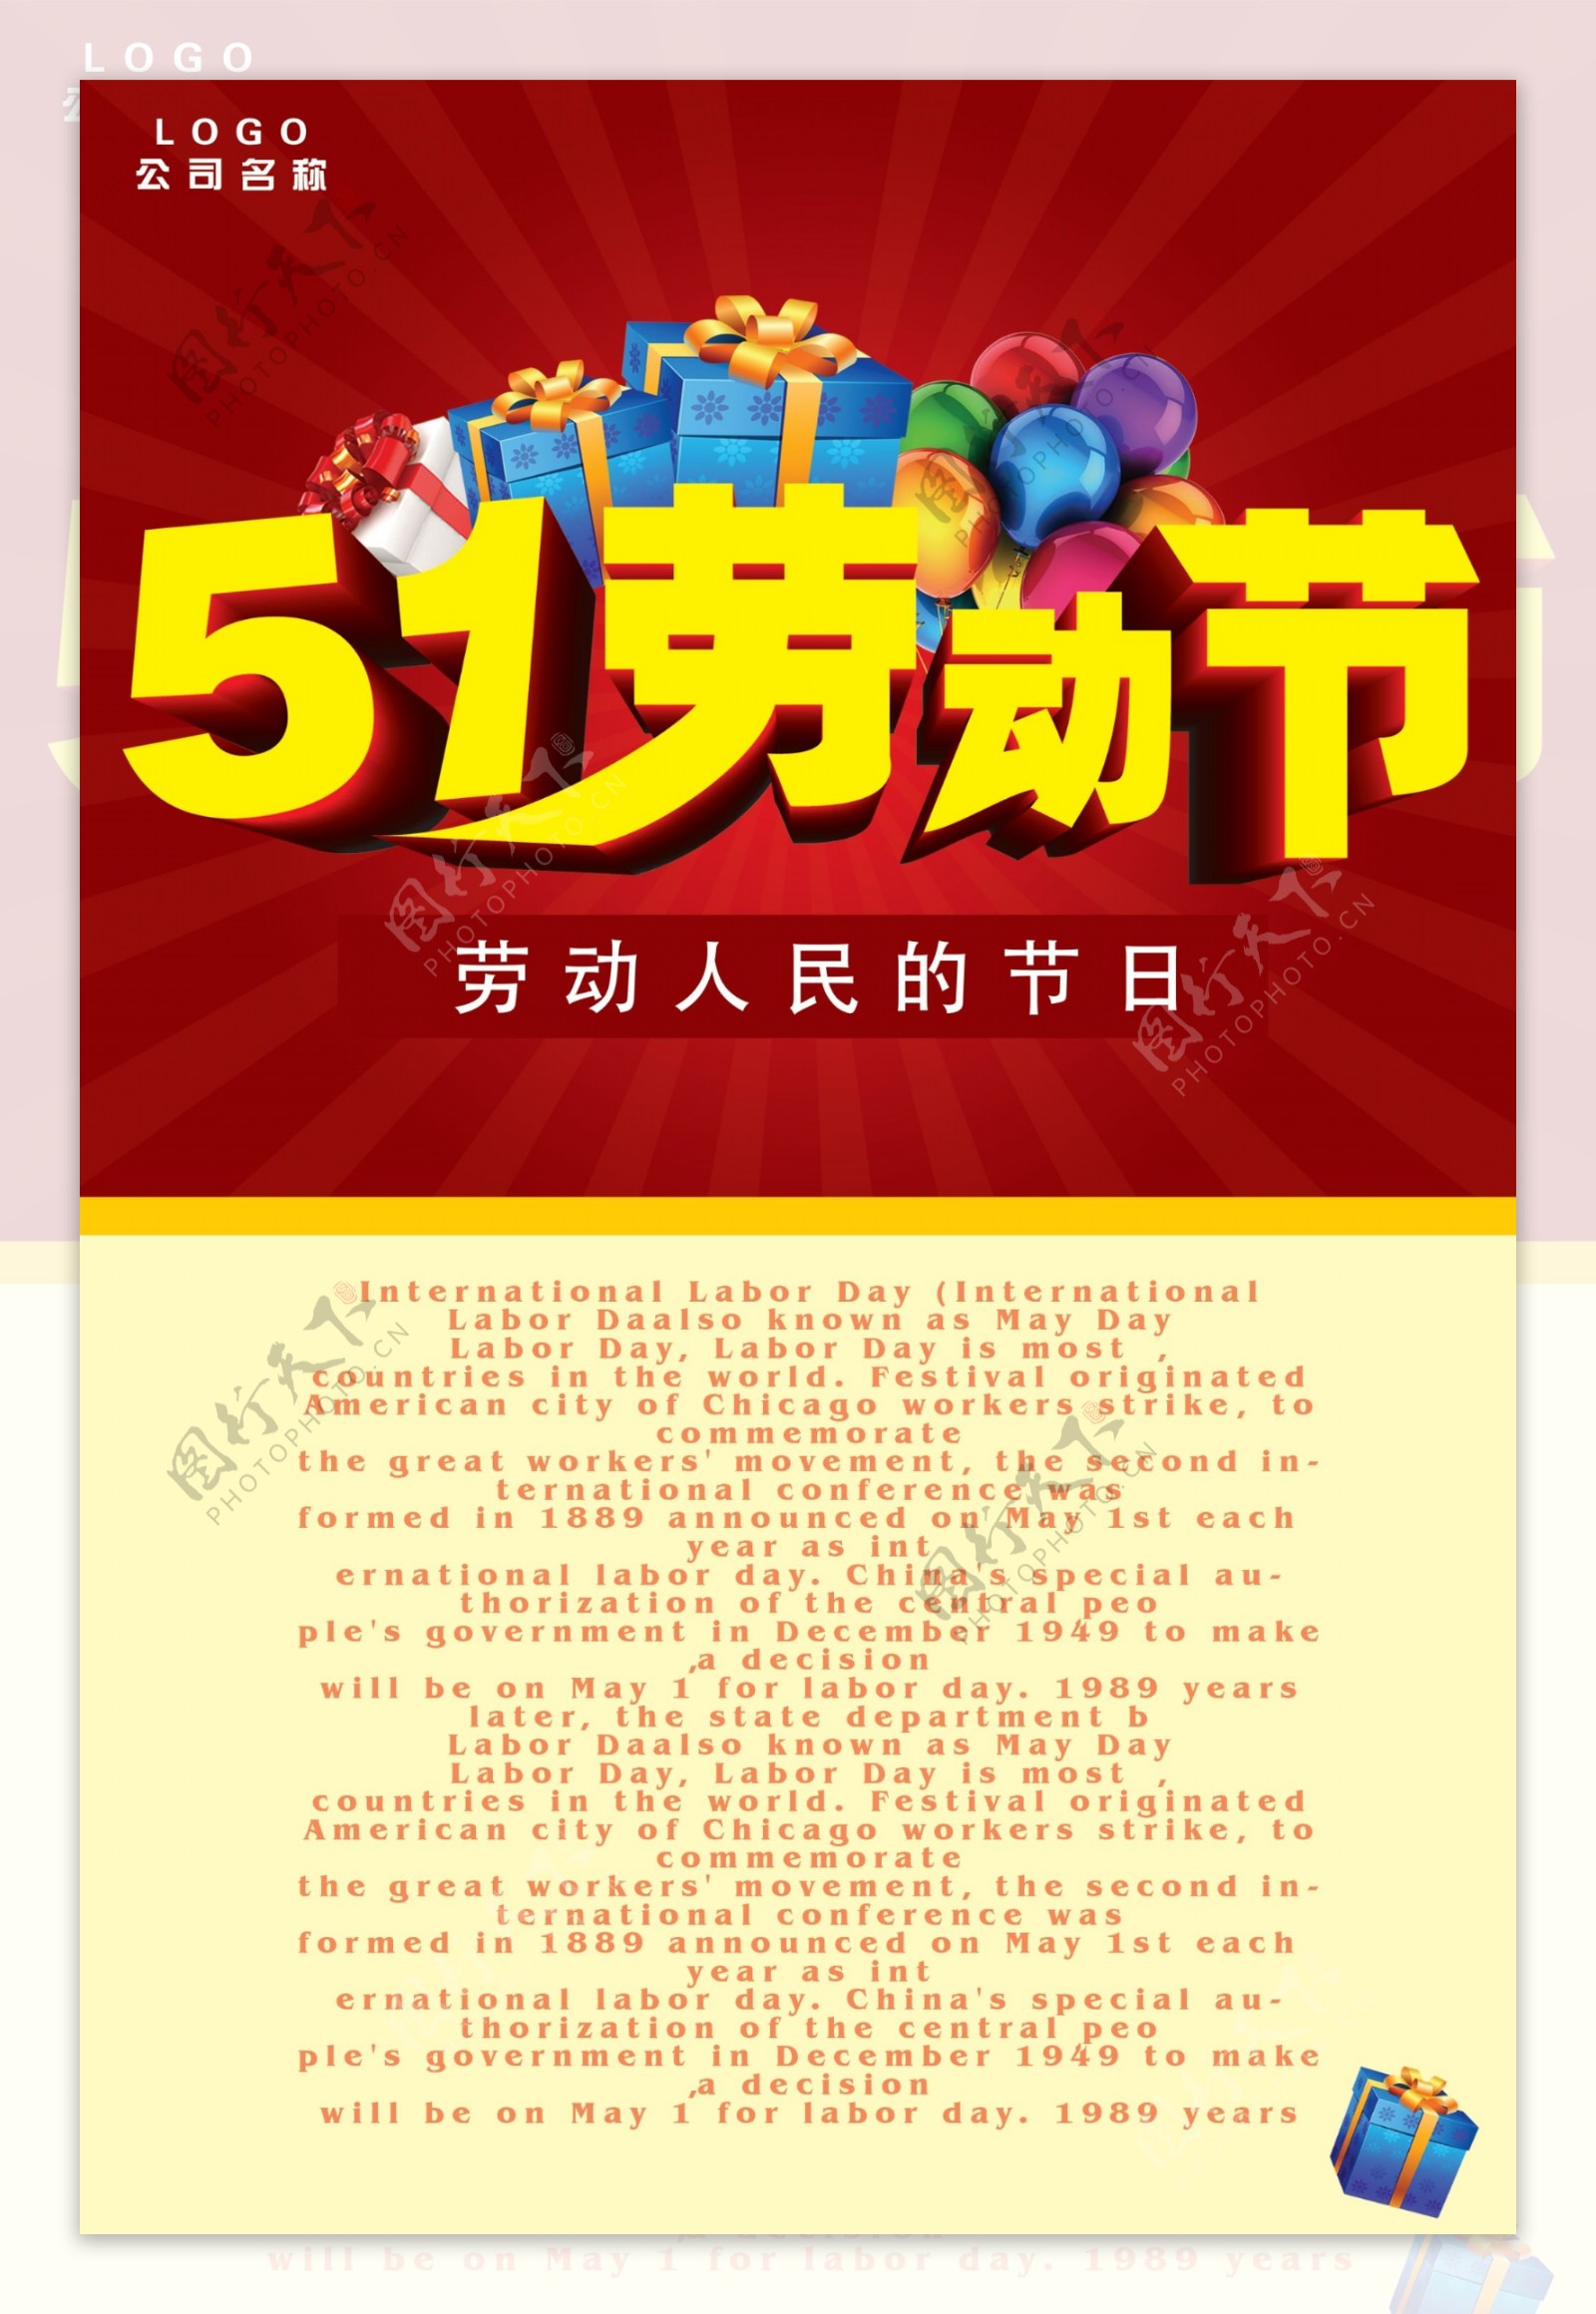 51劳动节宣传展板设计PSD素材